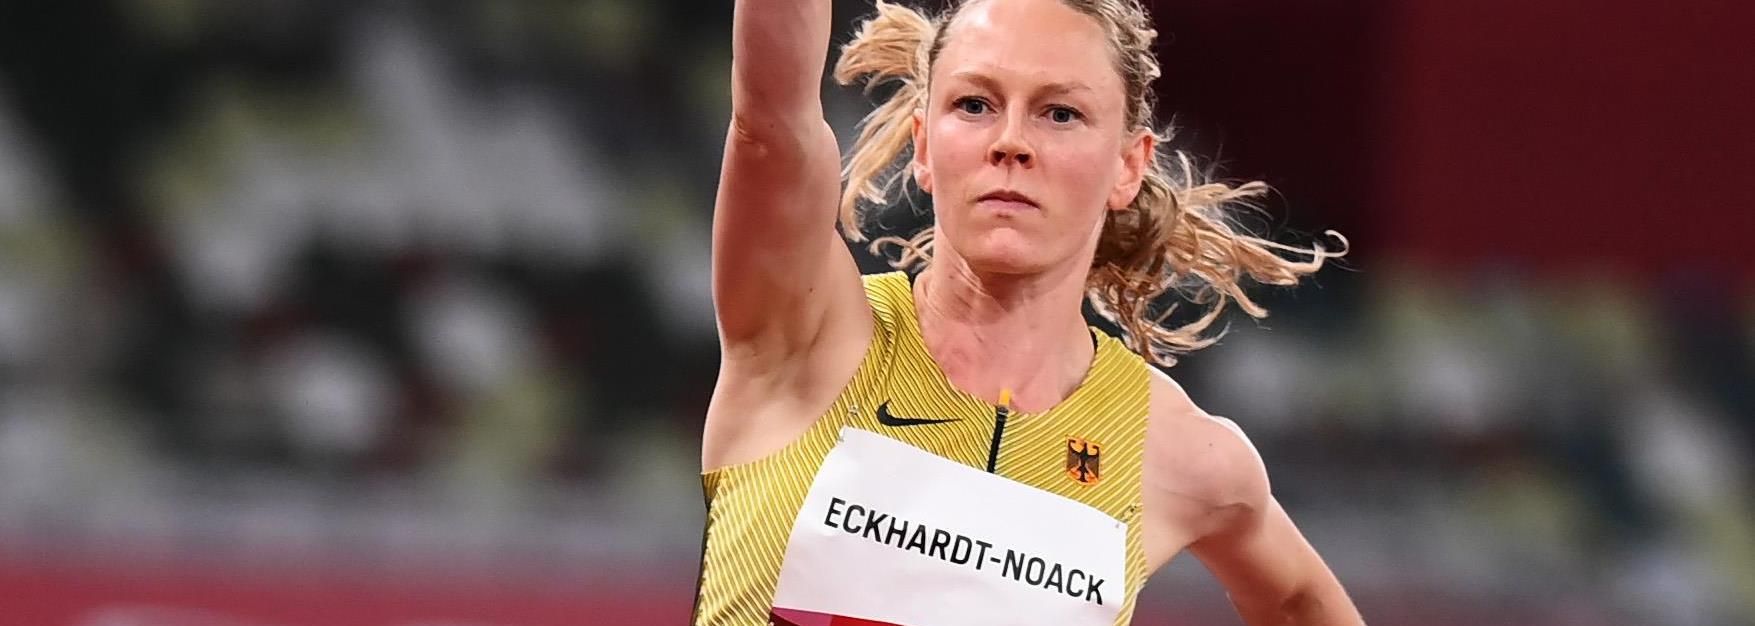 Neele ECKHARDT-NOACK | Profile | World Athletics